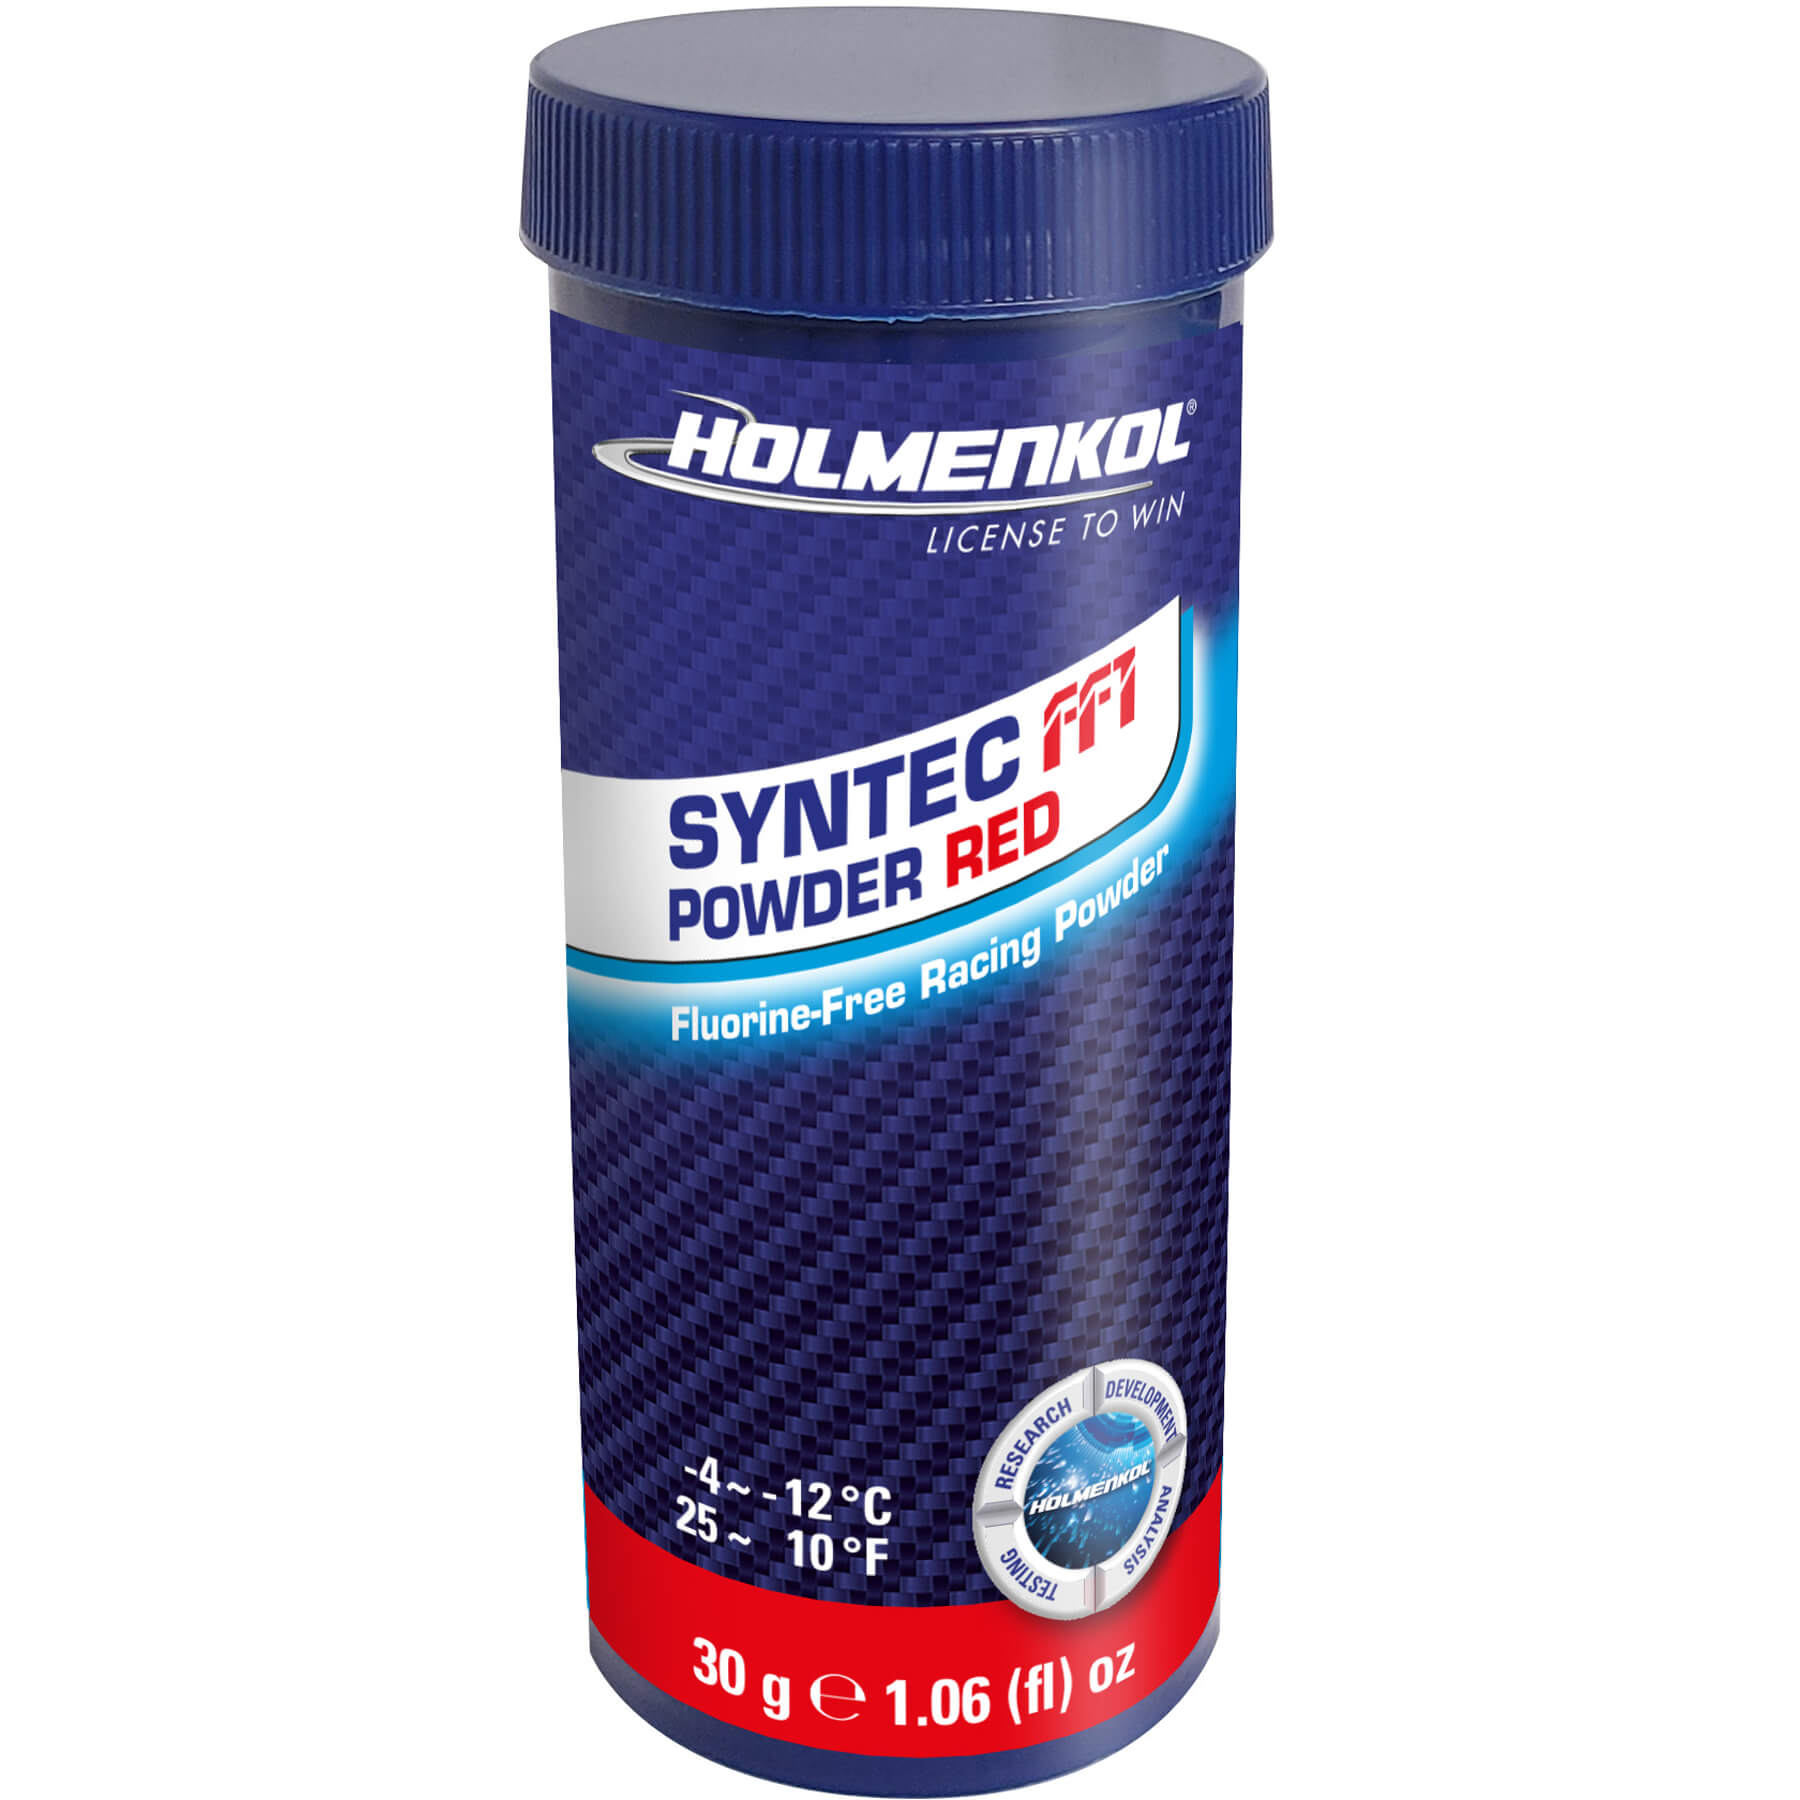 Buy red Holmenkol Syntec FF1 Powder 30g